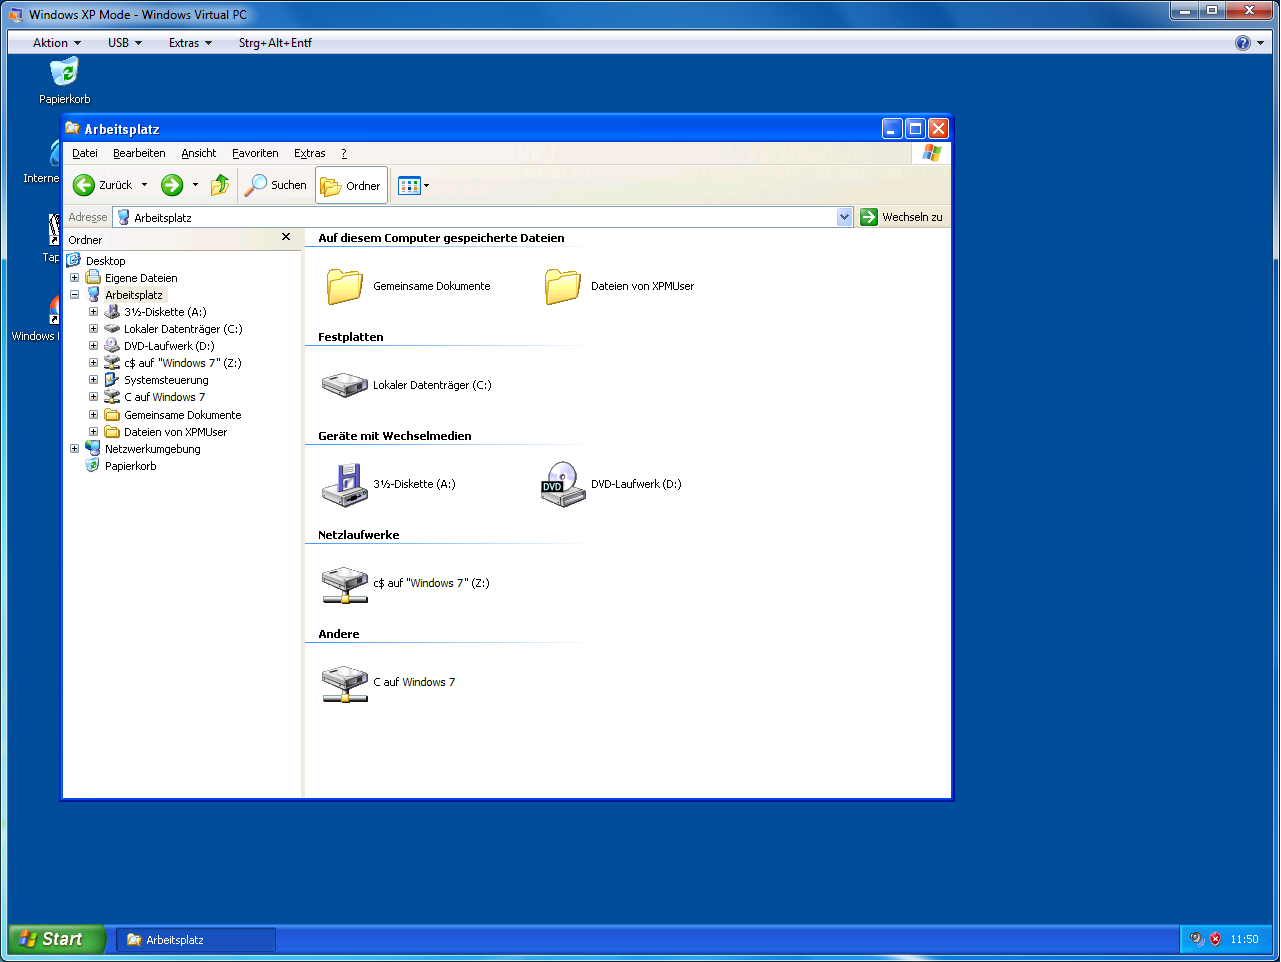 Beim ersten Verbinden müssen Benutzername und Kennwort von Windows 7 eingegeben werden.